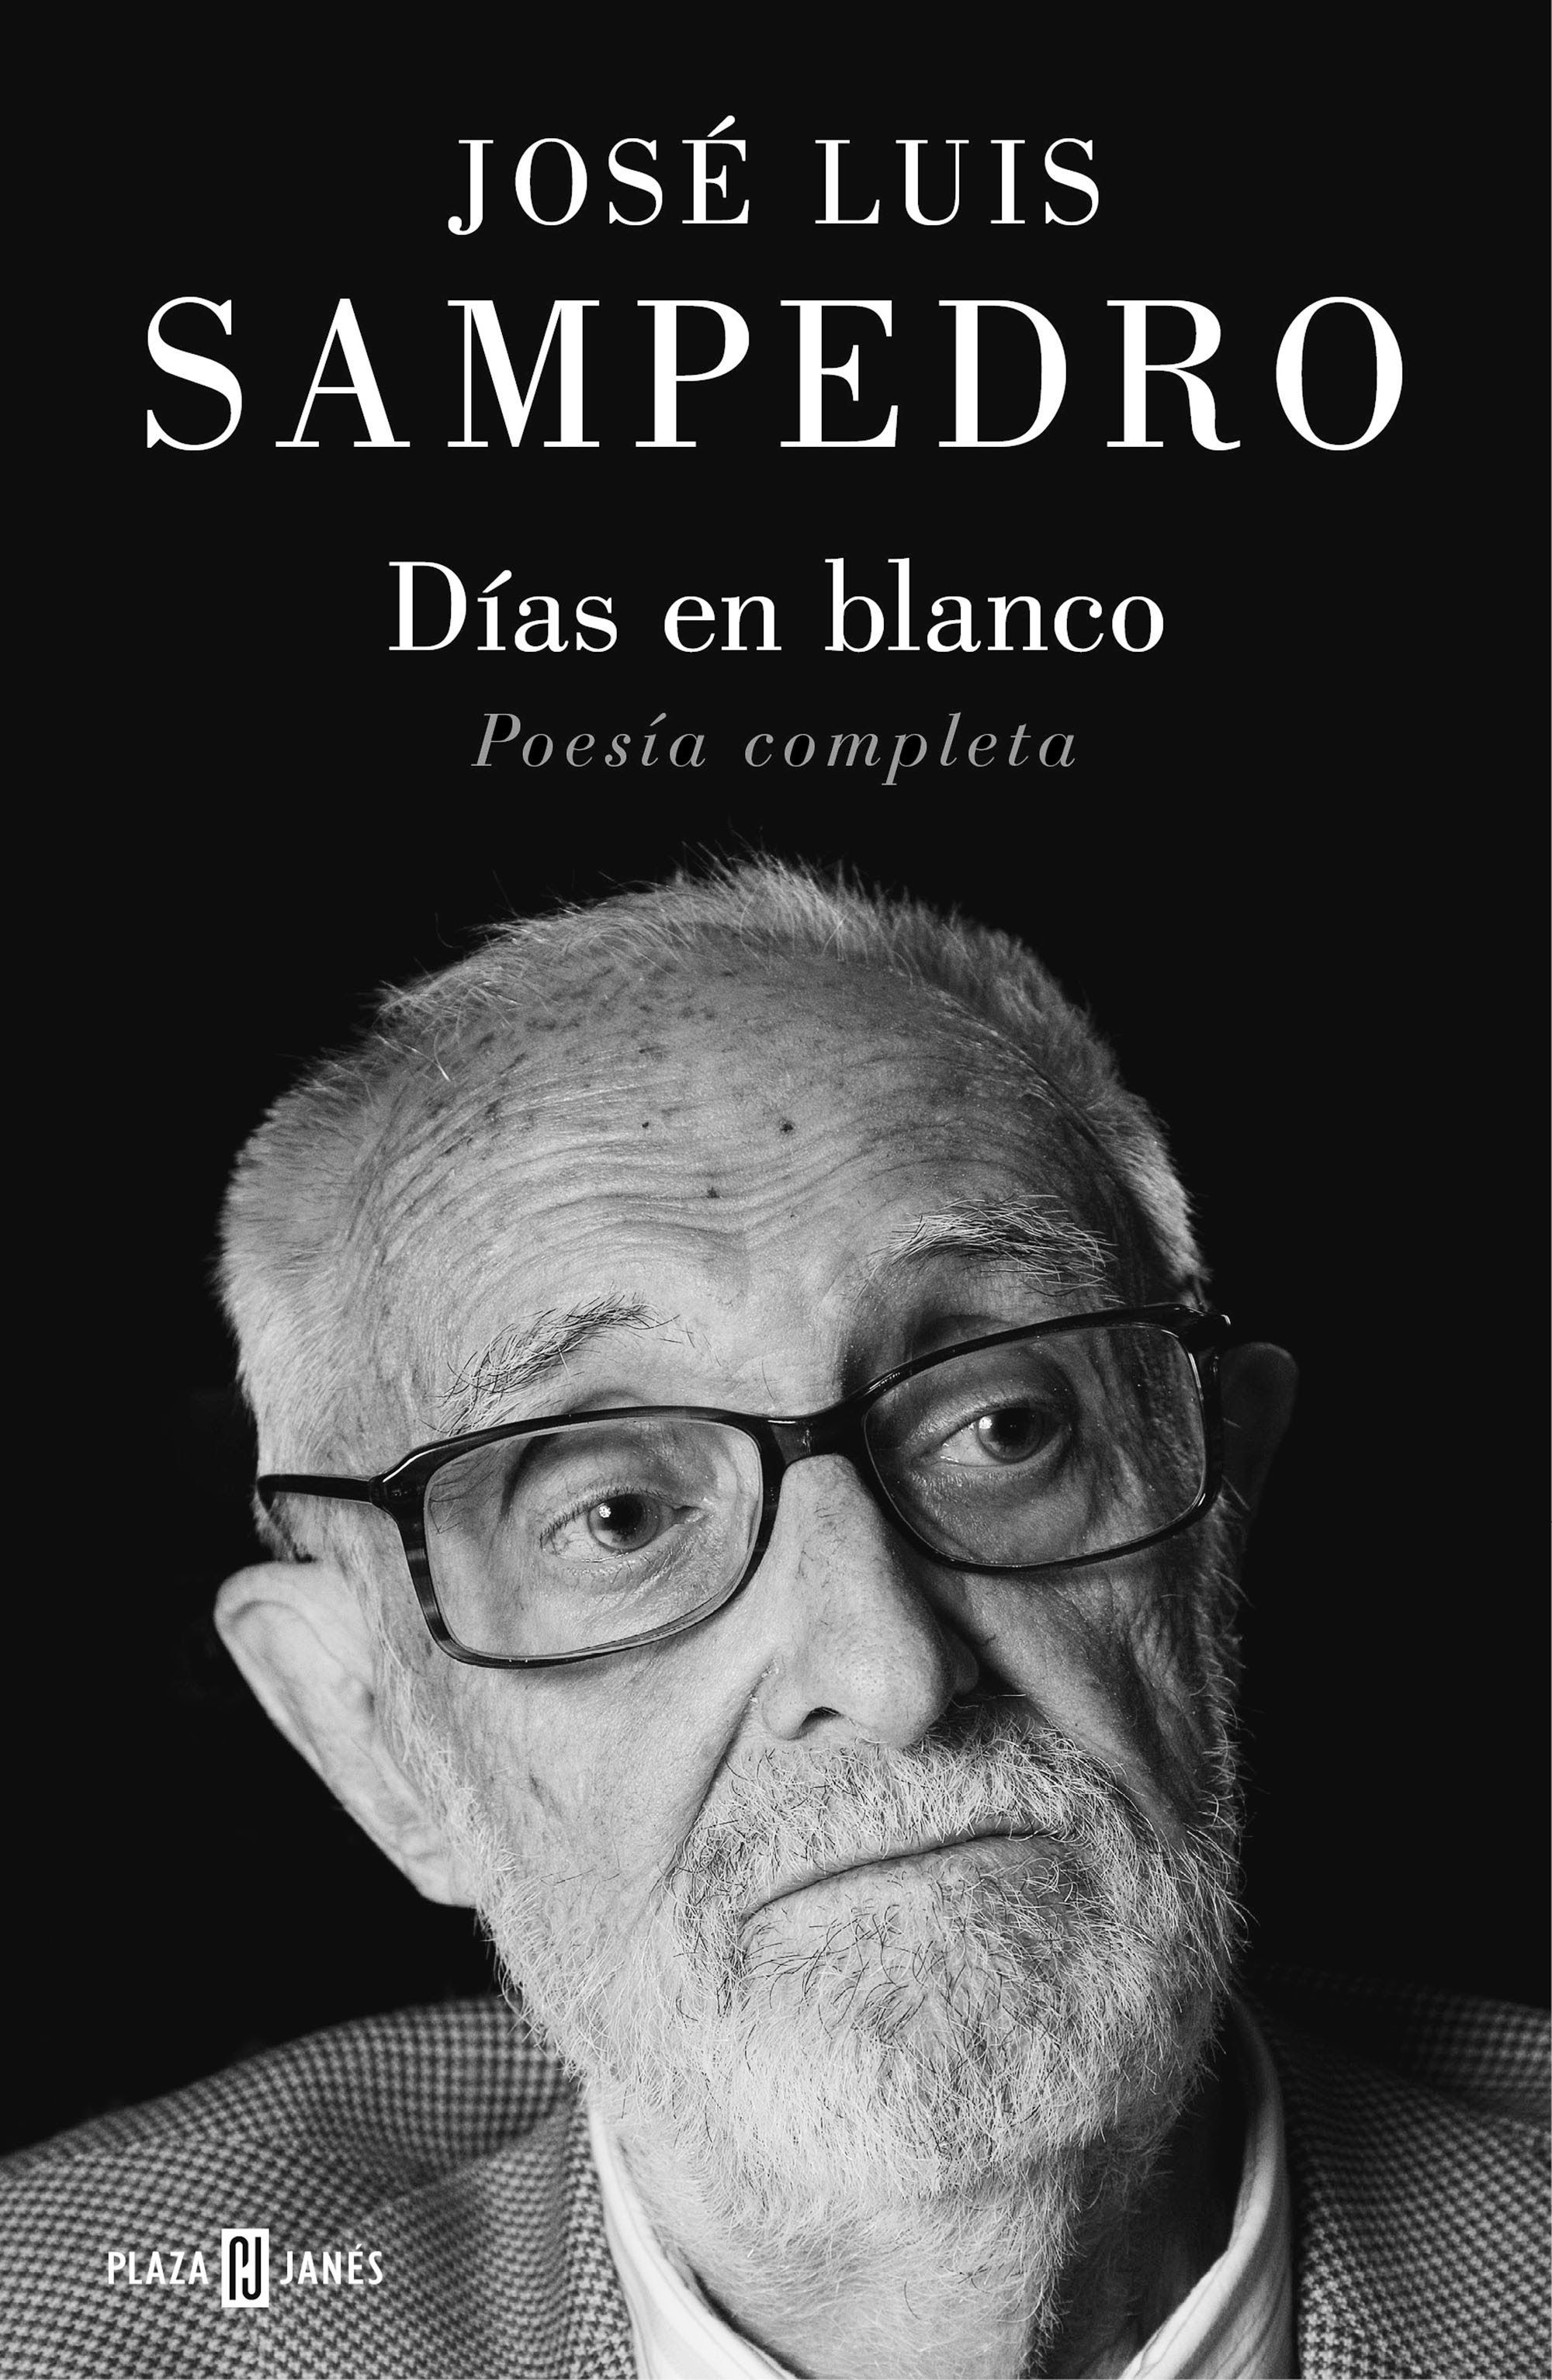 Sale a la luz 'Días en blanco' la obra poética completa de José Luis Sampedro